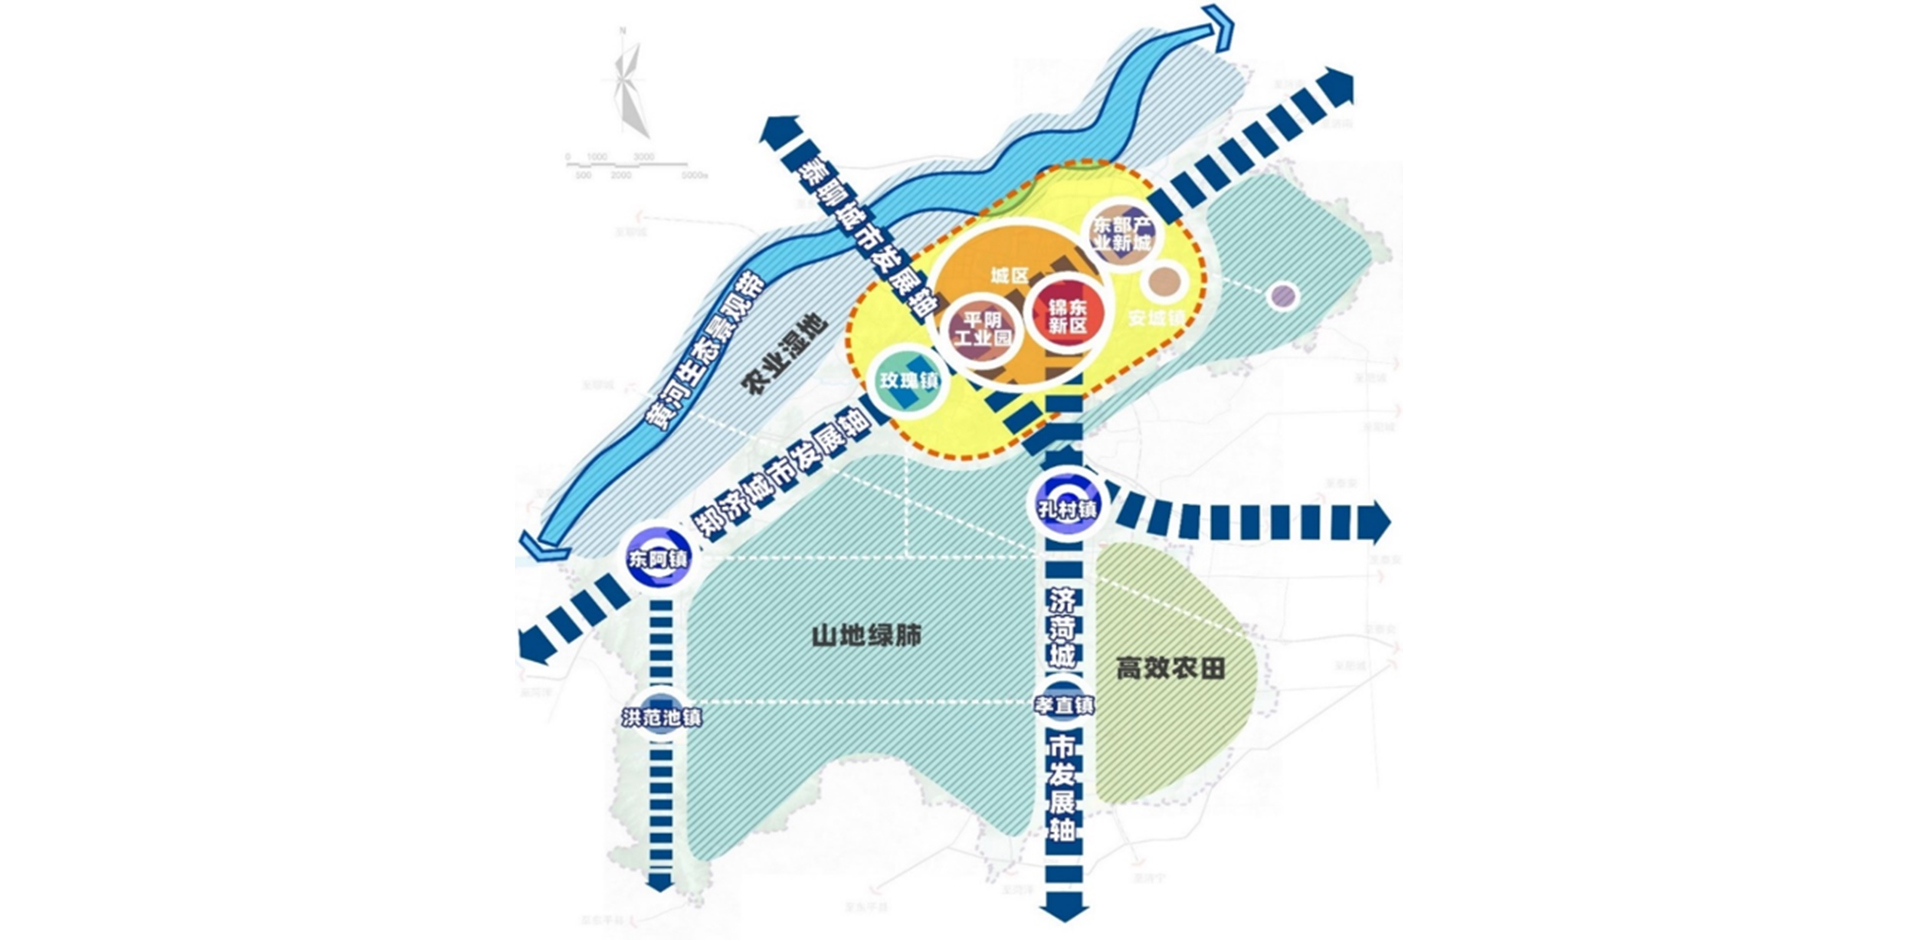 平阴县地图|平阴县地图全图高清版大图片|旅途风景图片网|www.visacits.com